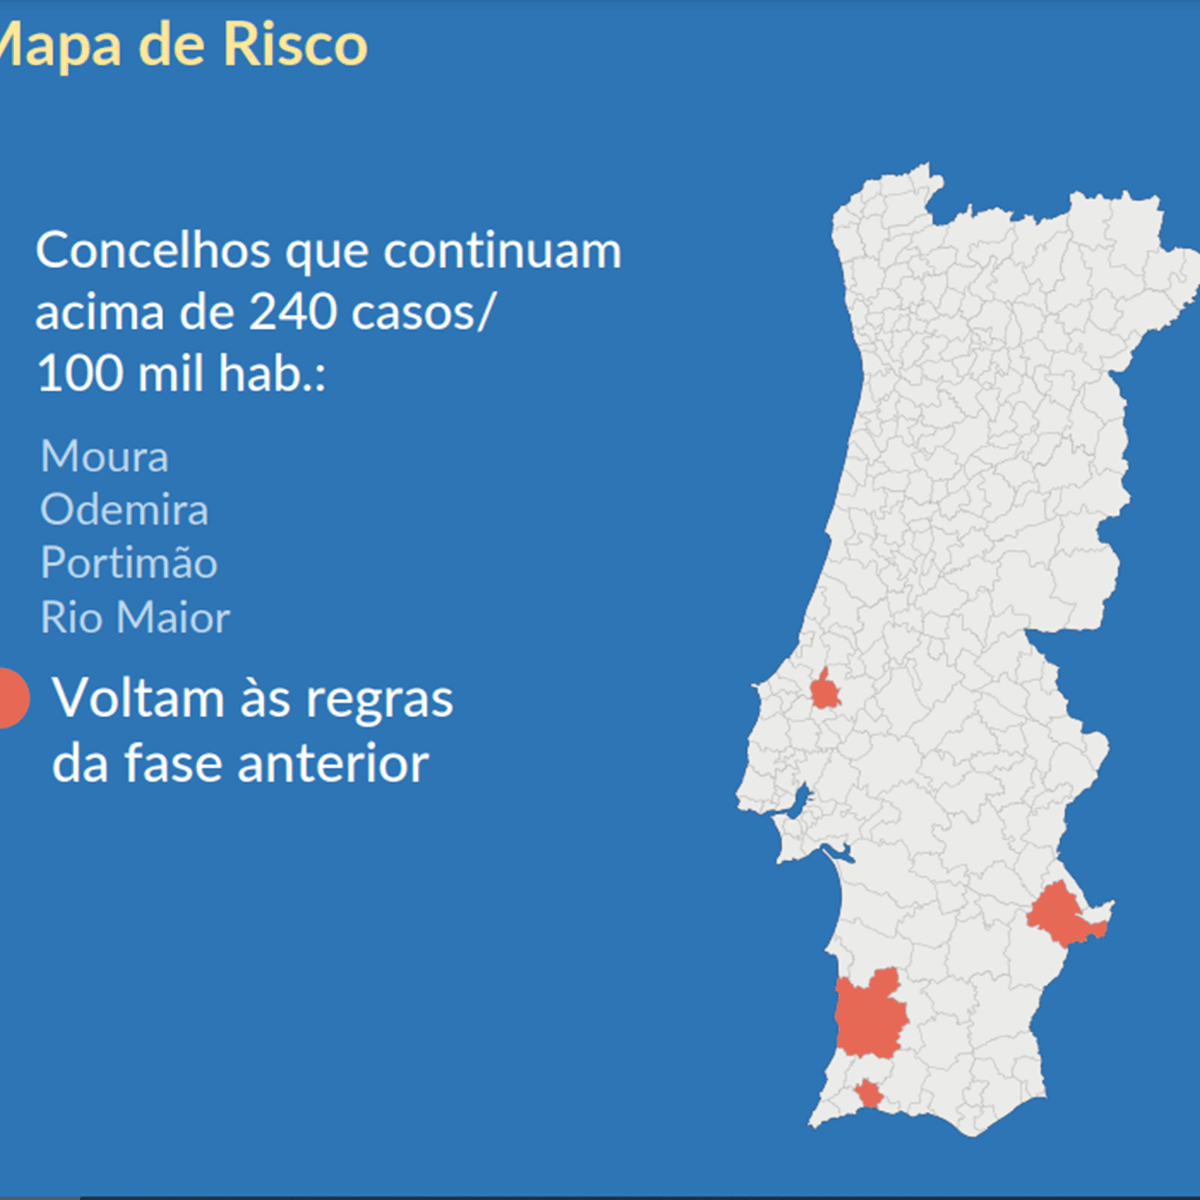 Feriados em Portugal – Wikipédia, a enciclopédia livre